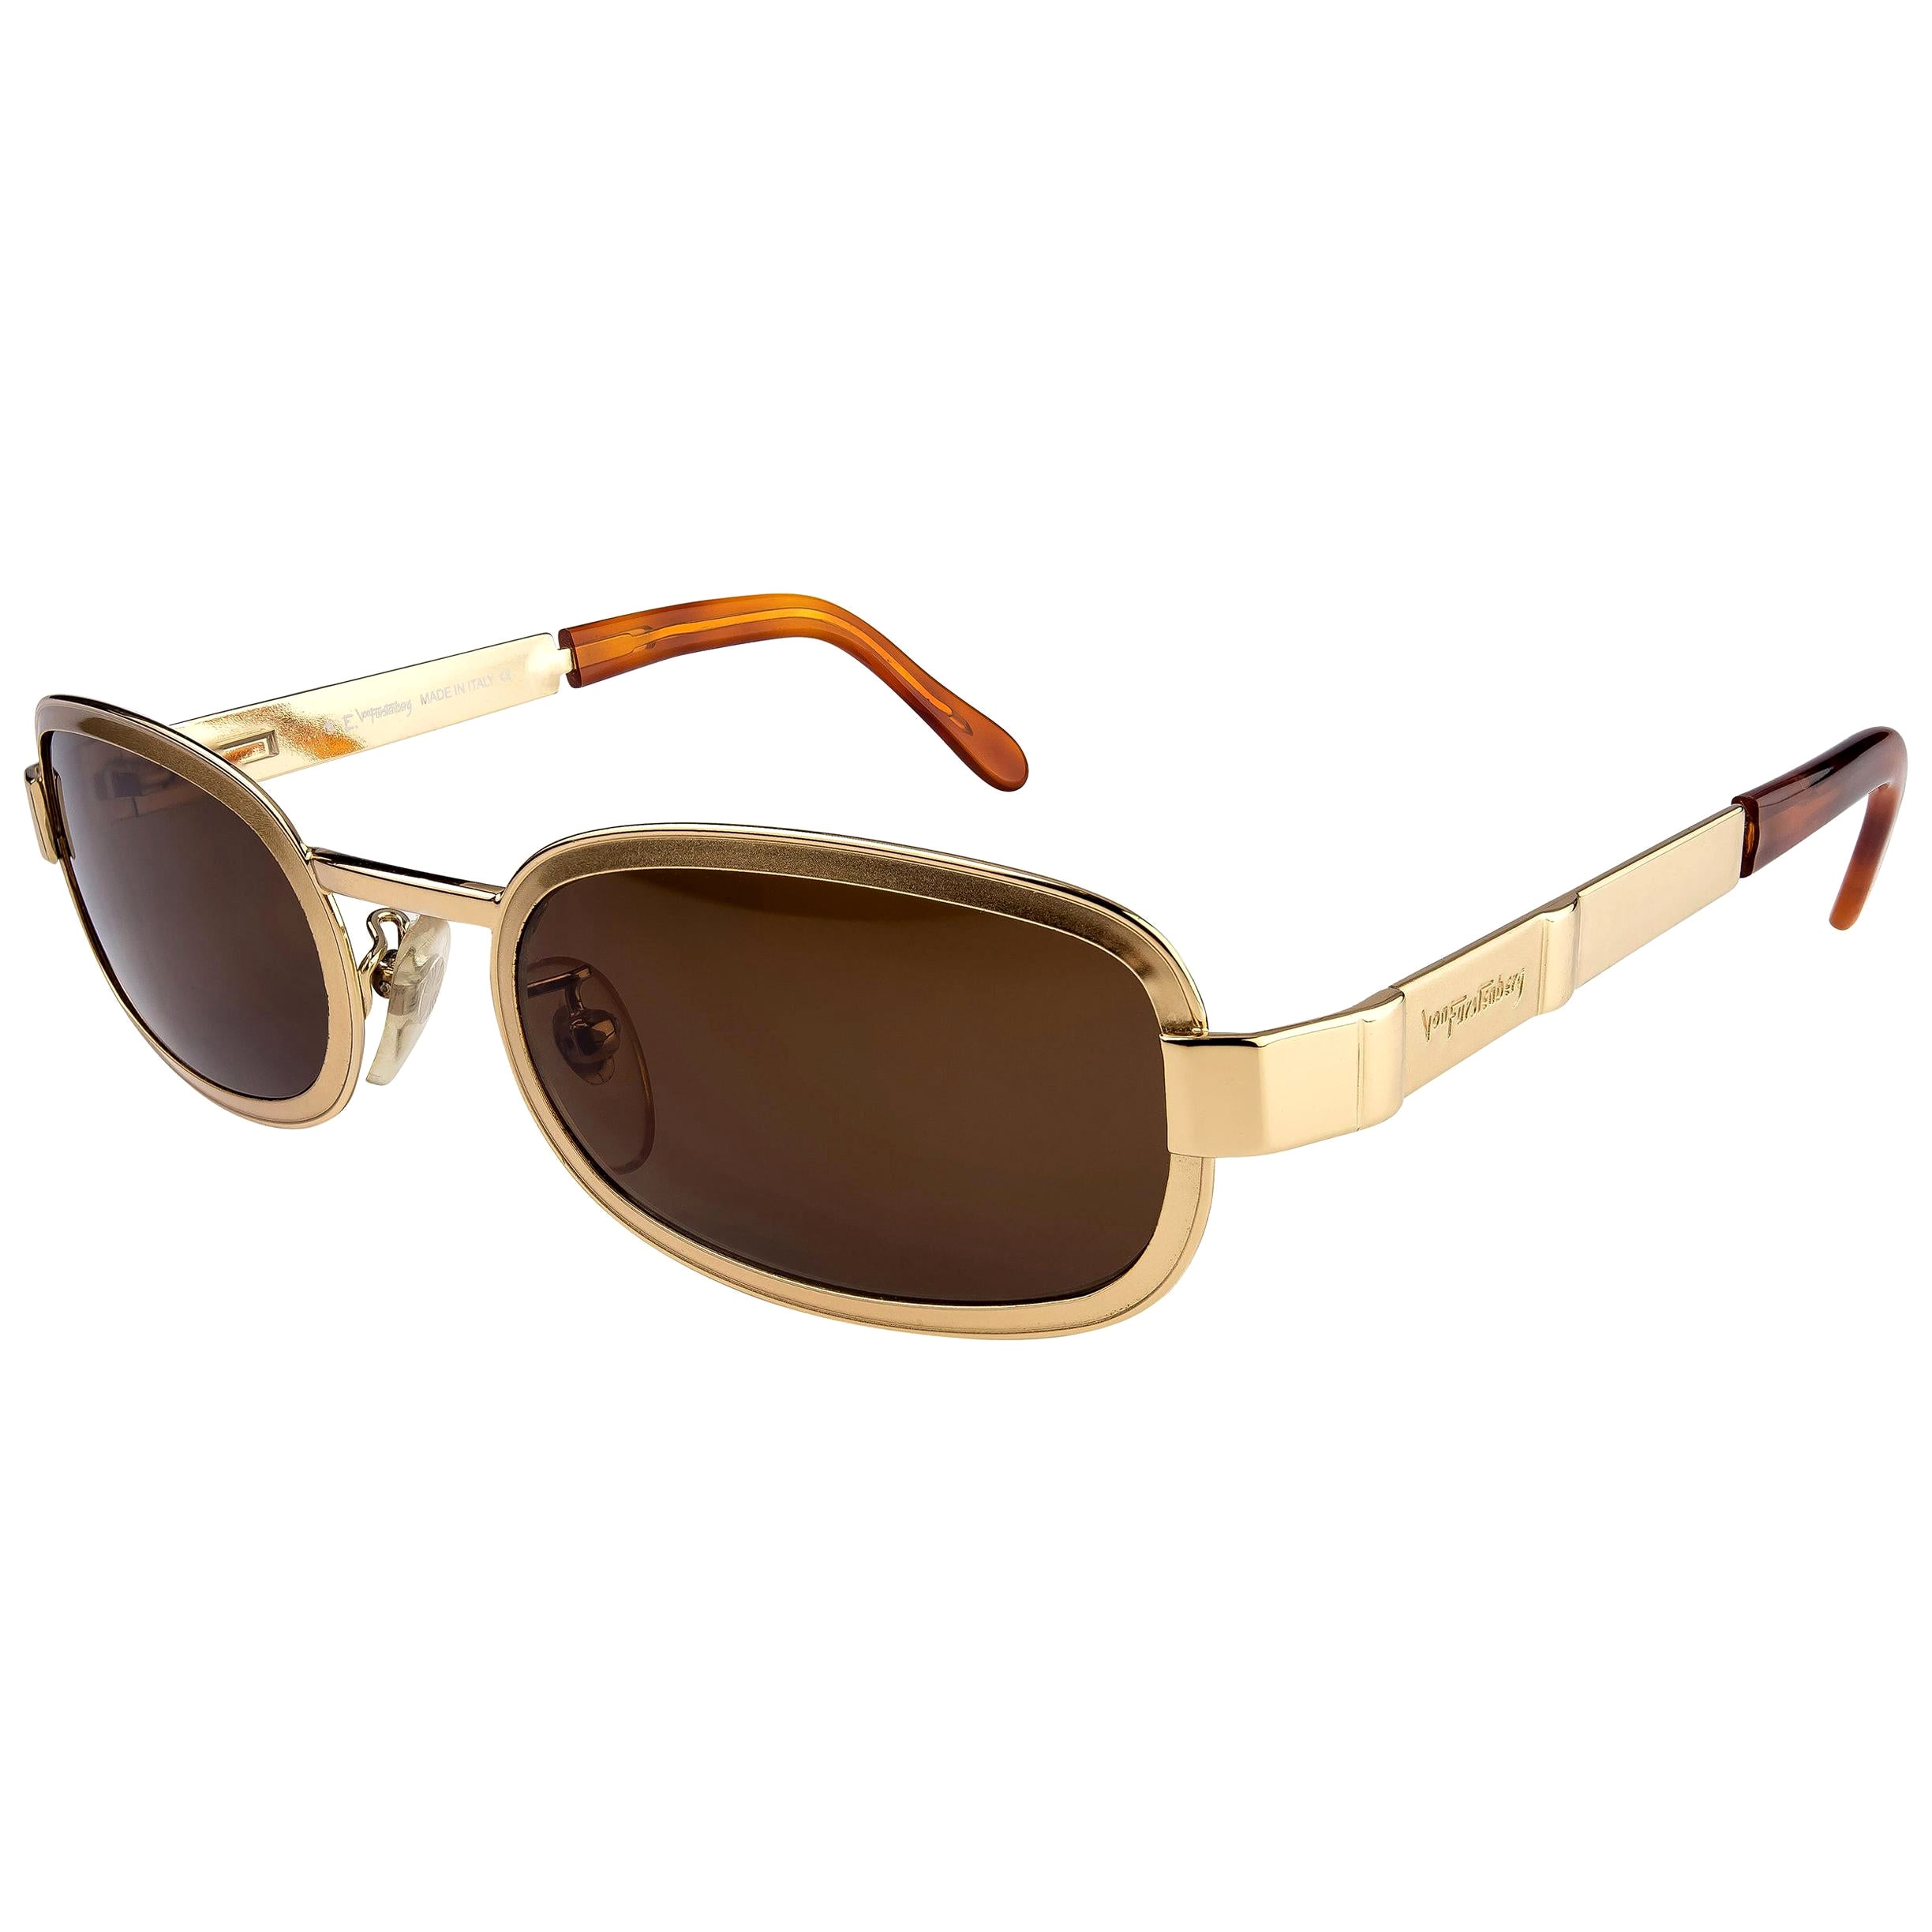 Von Furstenberg lunettes de soleil vintage dorées 80s